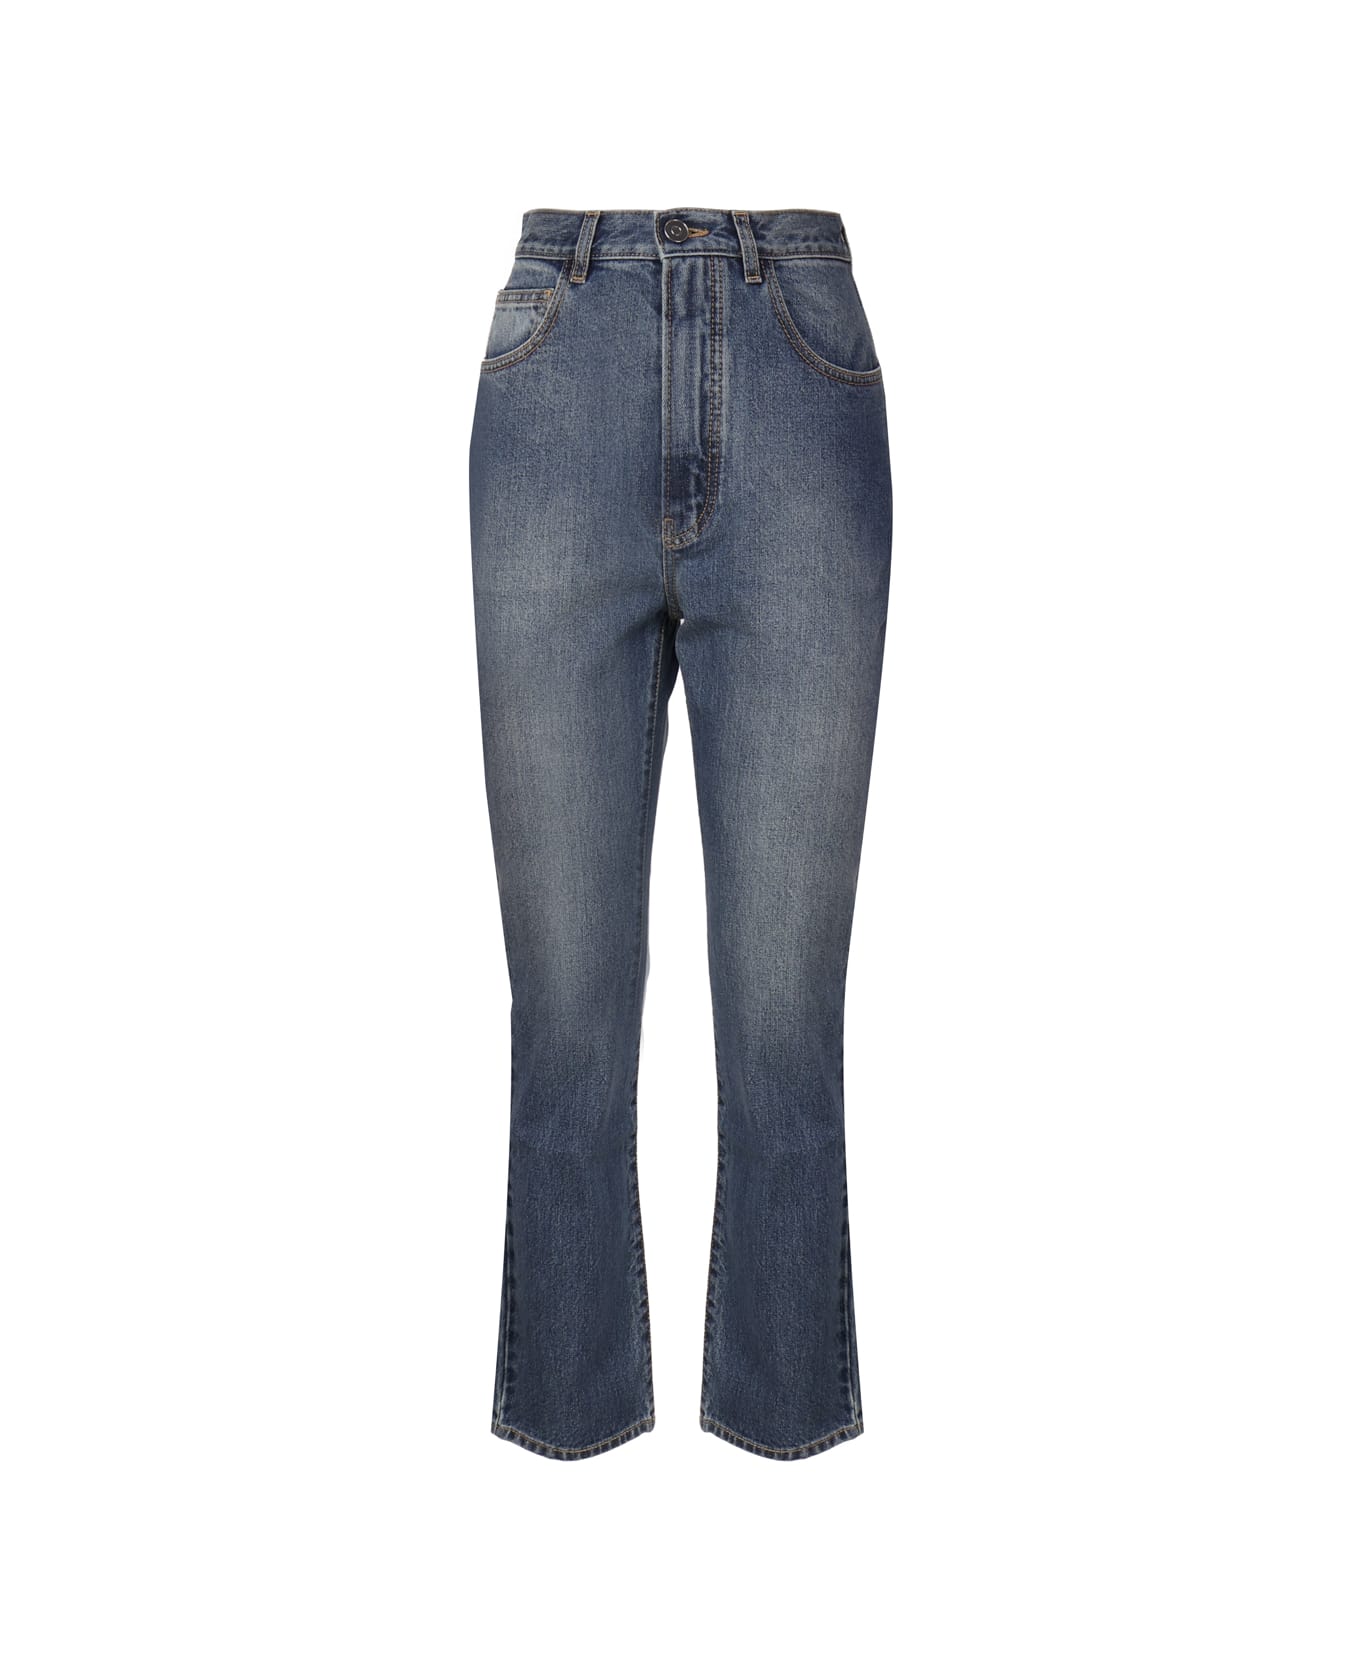 Alaia Cotton Denim Jeans - Blue denim